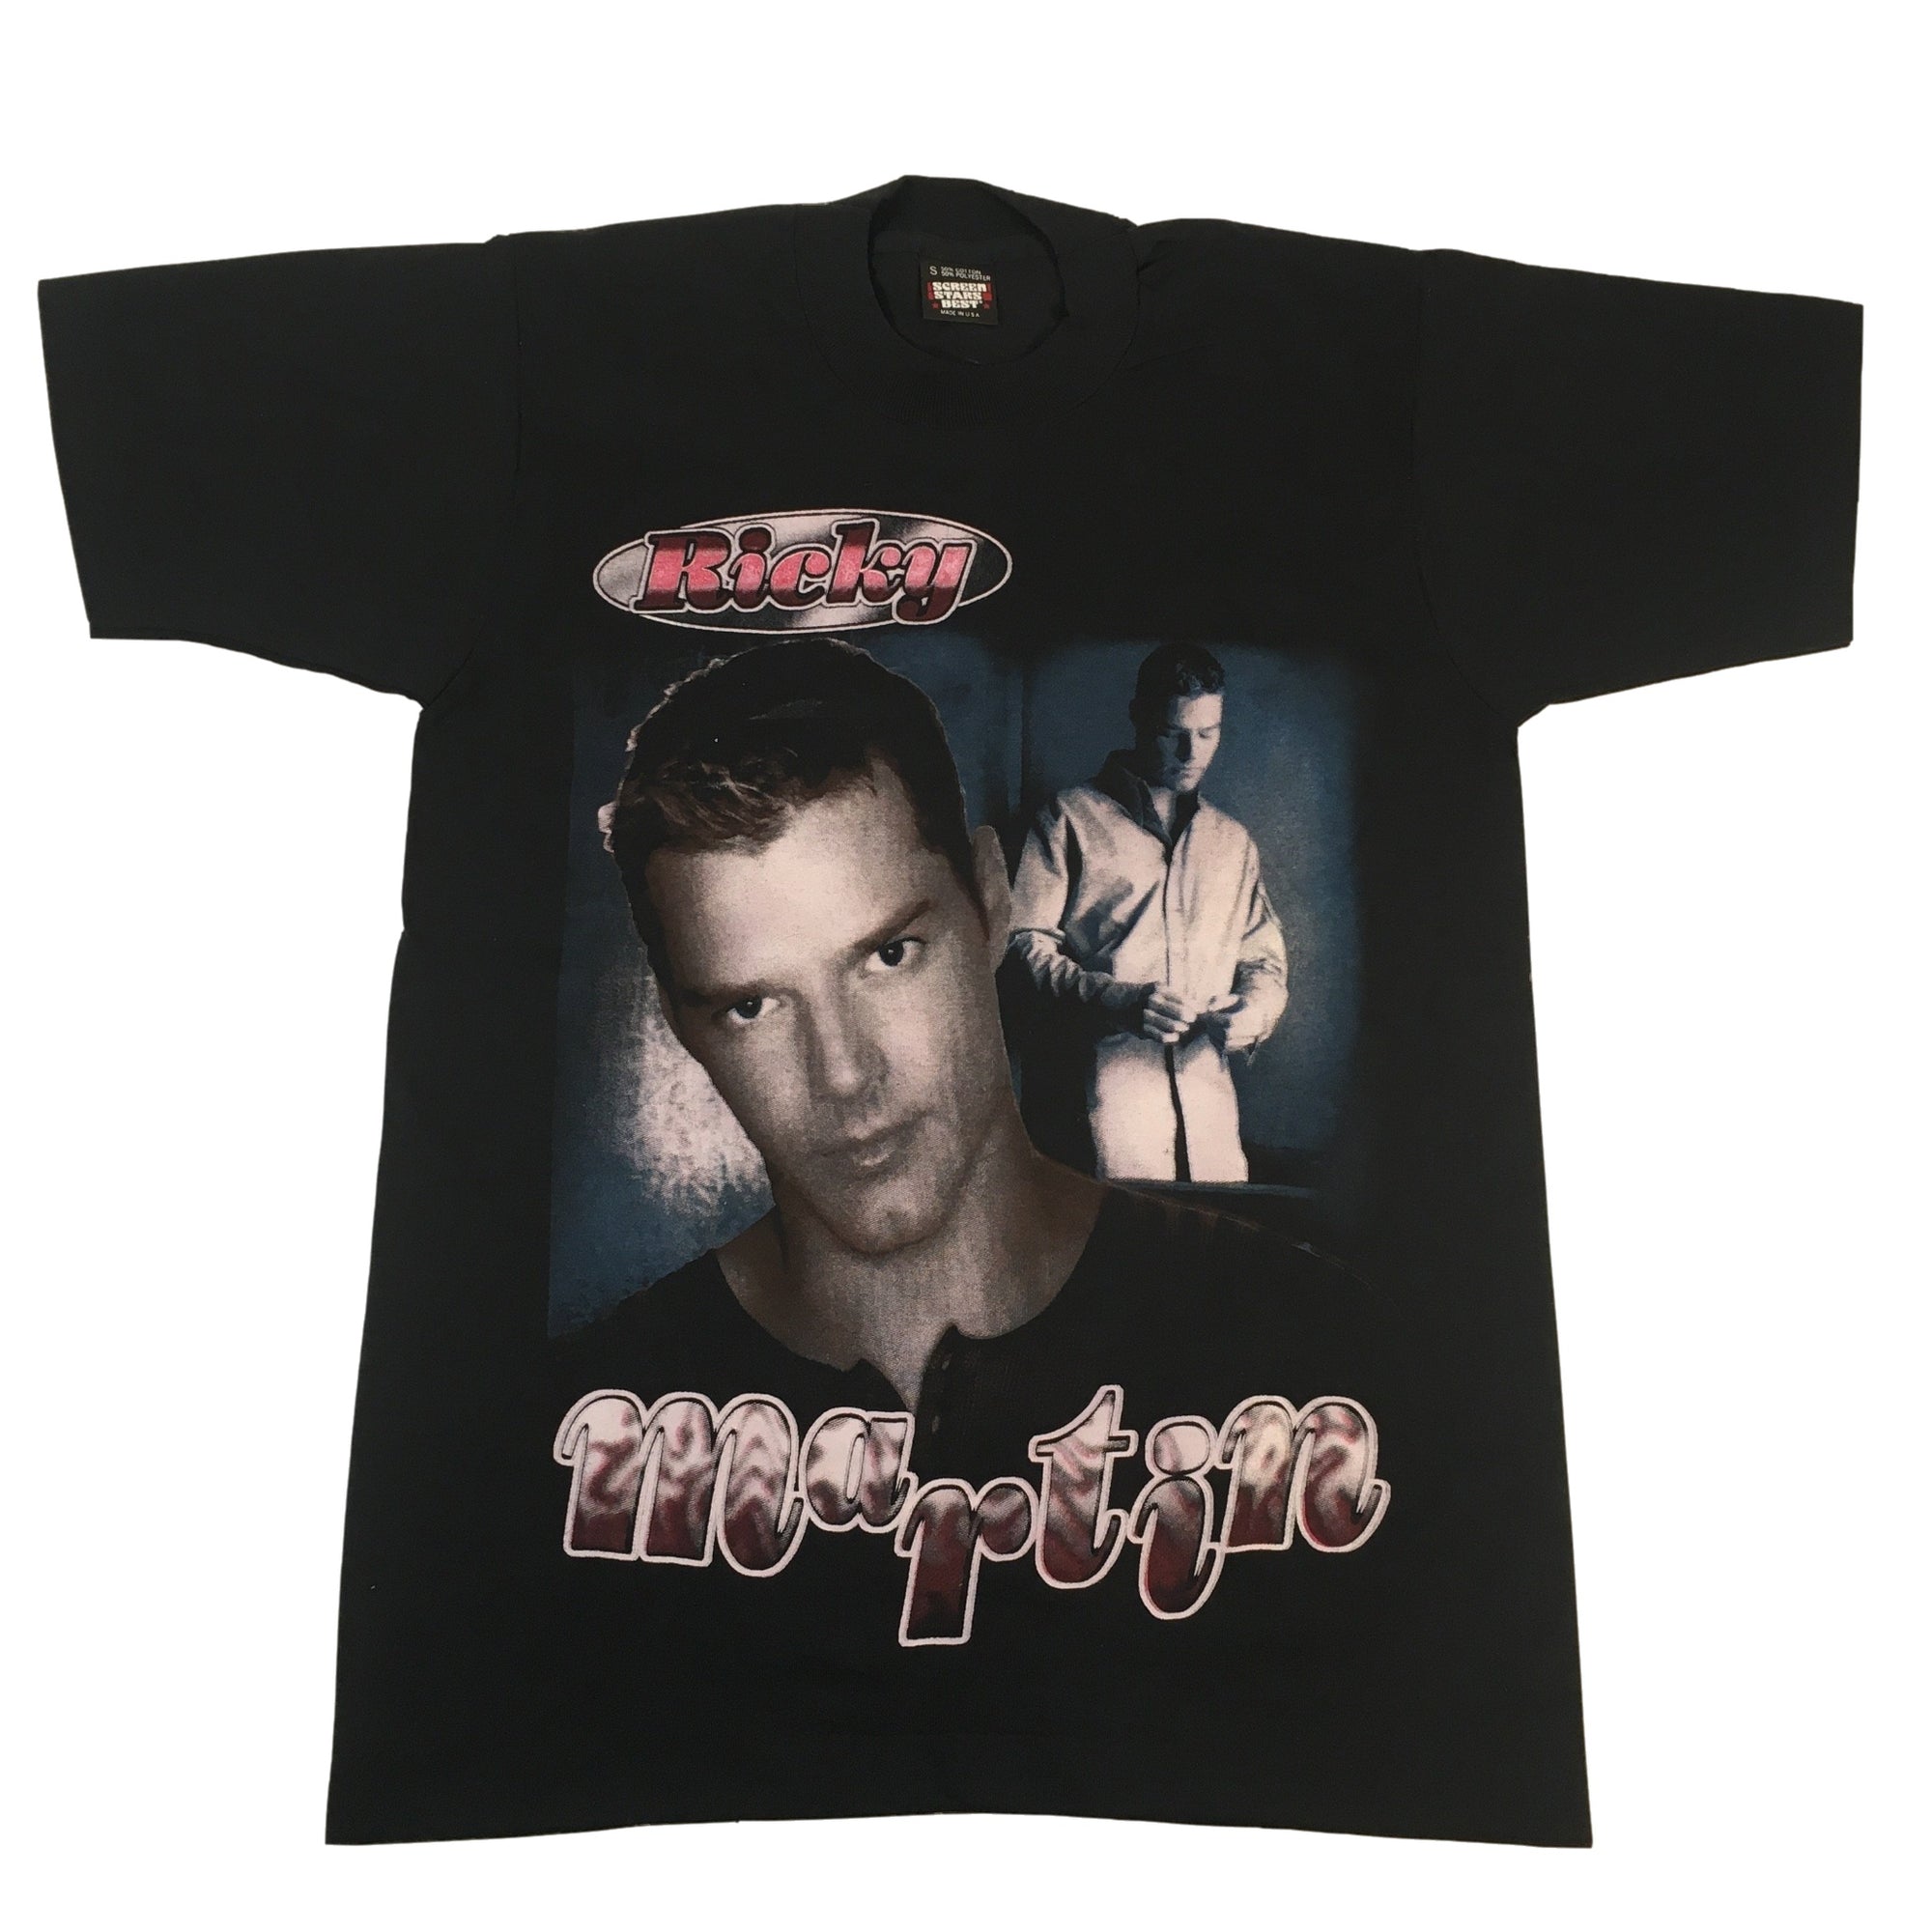 Vintage Ricky Martin "Livin' La Vida Loca" T-Shirt - jointcustodydc